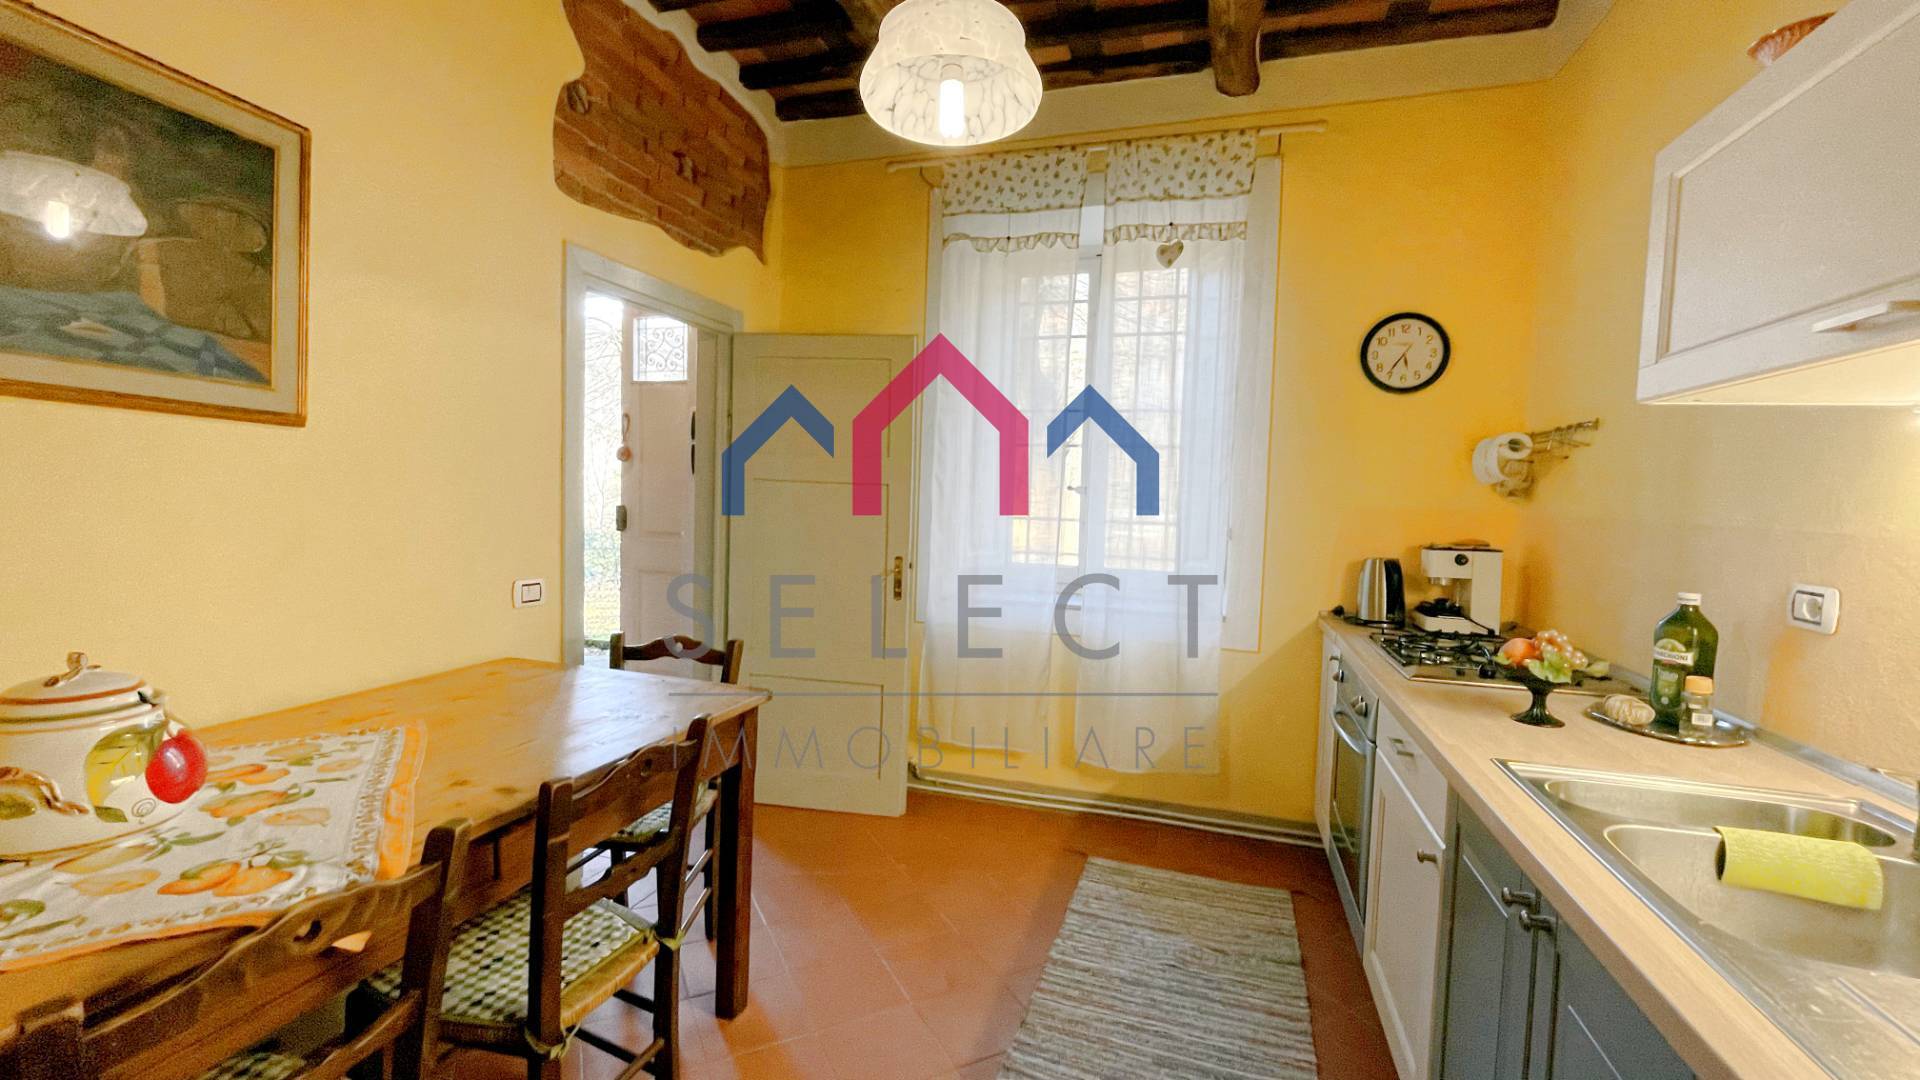 Villa in vendita a Borgo a Mozzano, 4 locali, zona enti, prezzo € 160.000 | PortaleAgenzieImmobiliari.it